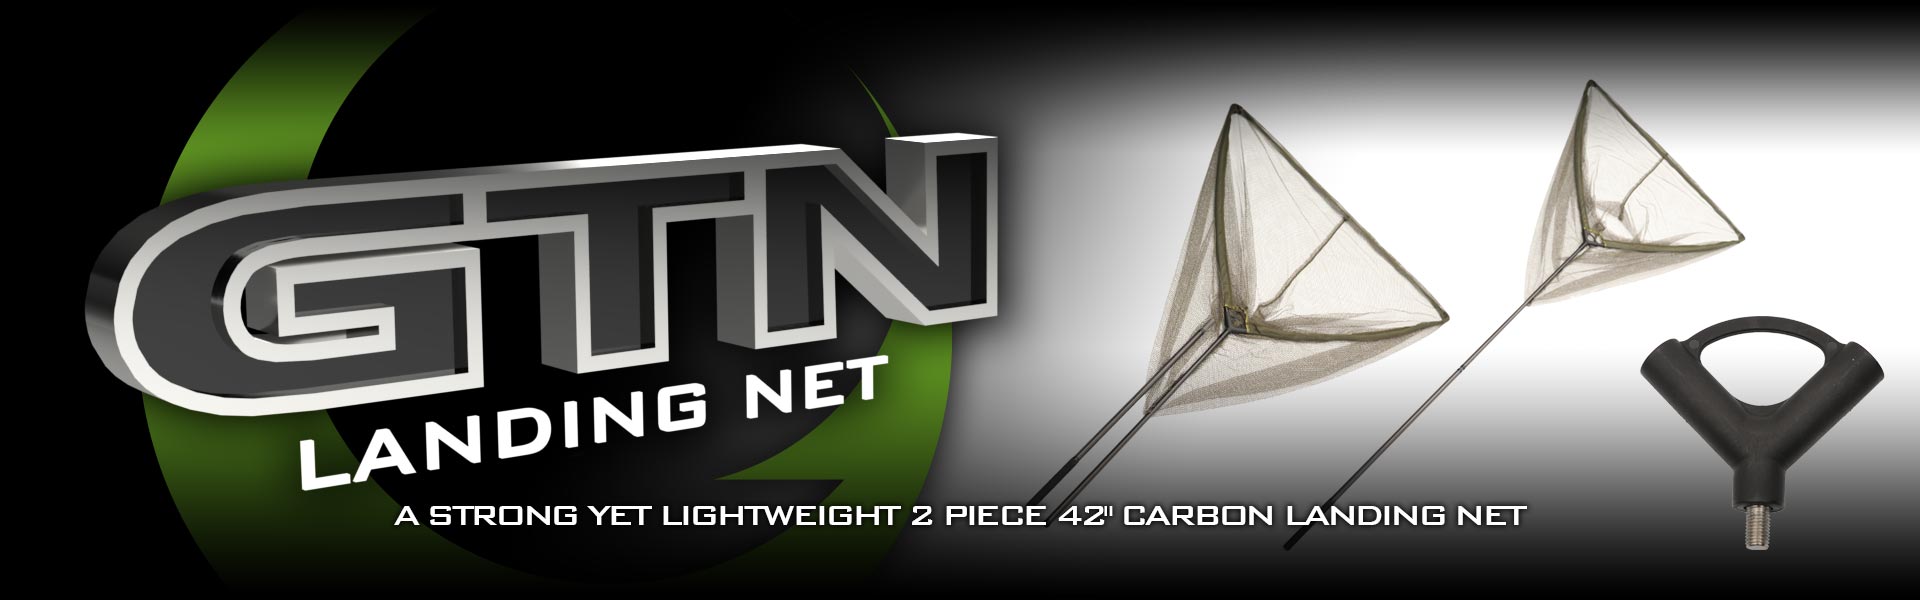 carp-fishing-gtn-carbon-landing-net-slider